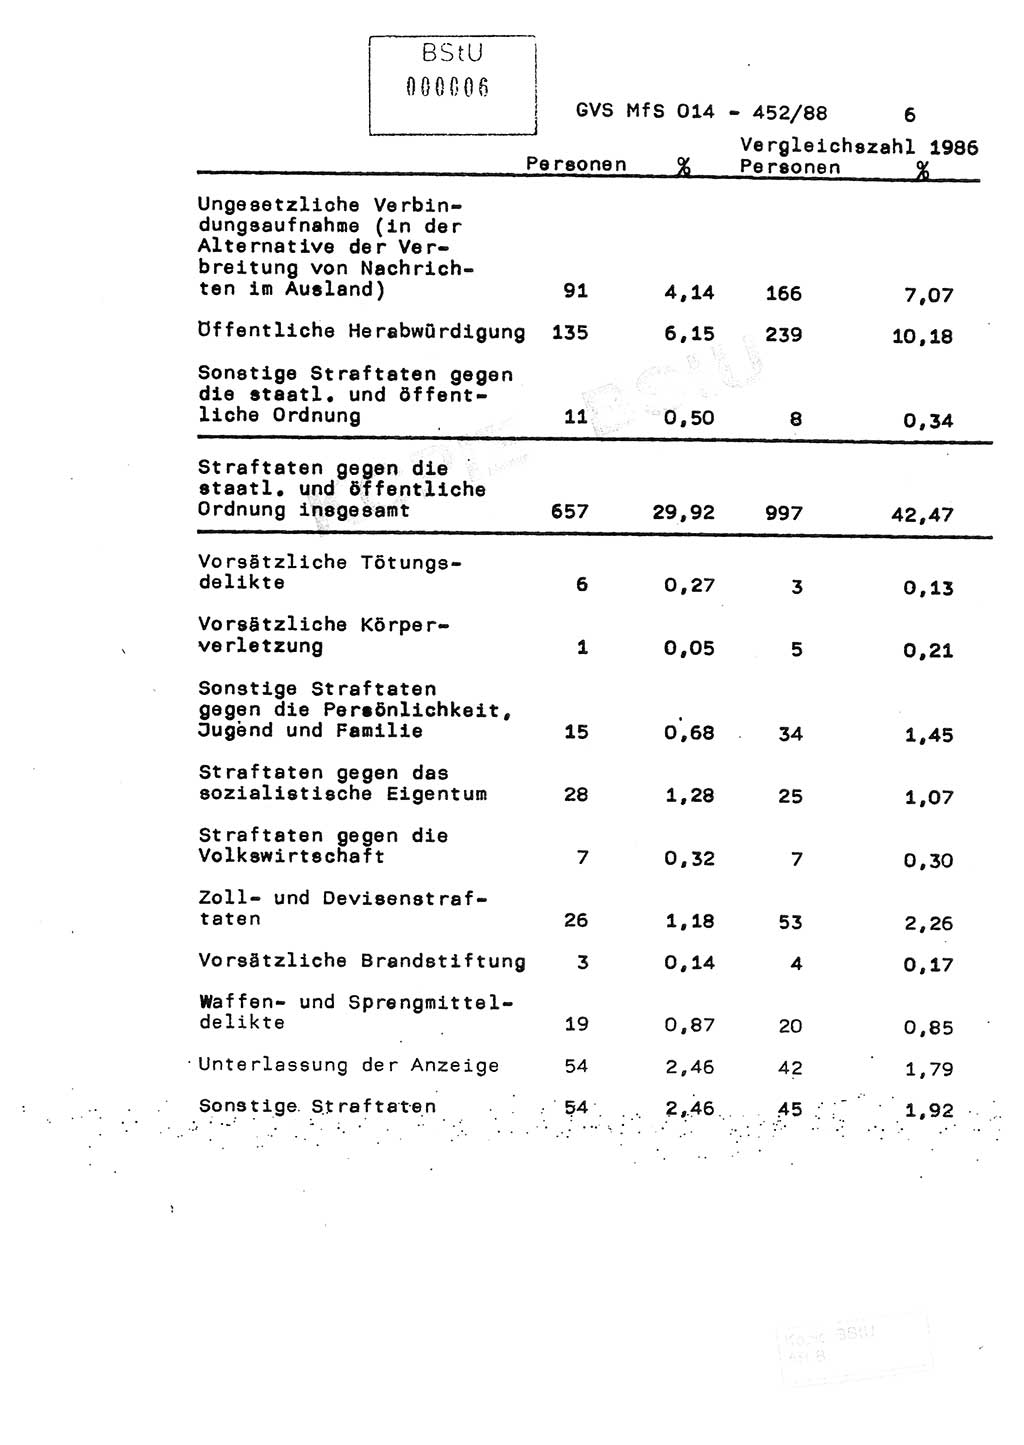 Jahresbericht der Hauptabteilung (HA) Ⅸ 1987, Einschätzung der Wirksamkeit der Untersuchungsarbeit im Jahre 1987, Ministerium für Staatssicherheit (MfS) der Deutschen Demokratischen Republik (DDR), Hauptabteilung Ⅸ, Geheime Verschlußsache (GVS) o014-452/88, Berlin 1988, Seite 6 (Einsch. MfS DDR HA Ⅸ GVS o014-452/88 1987, S. 6)